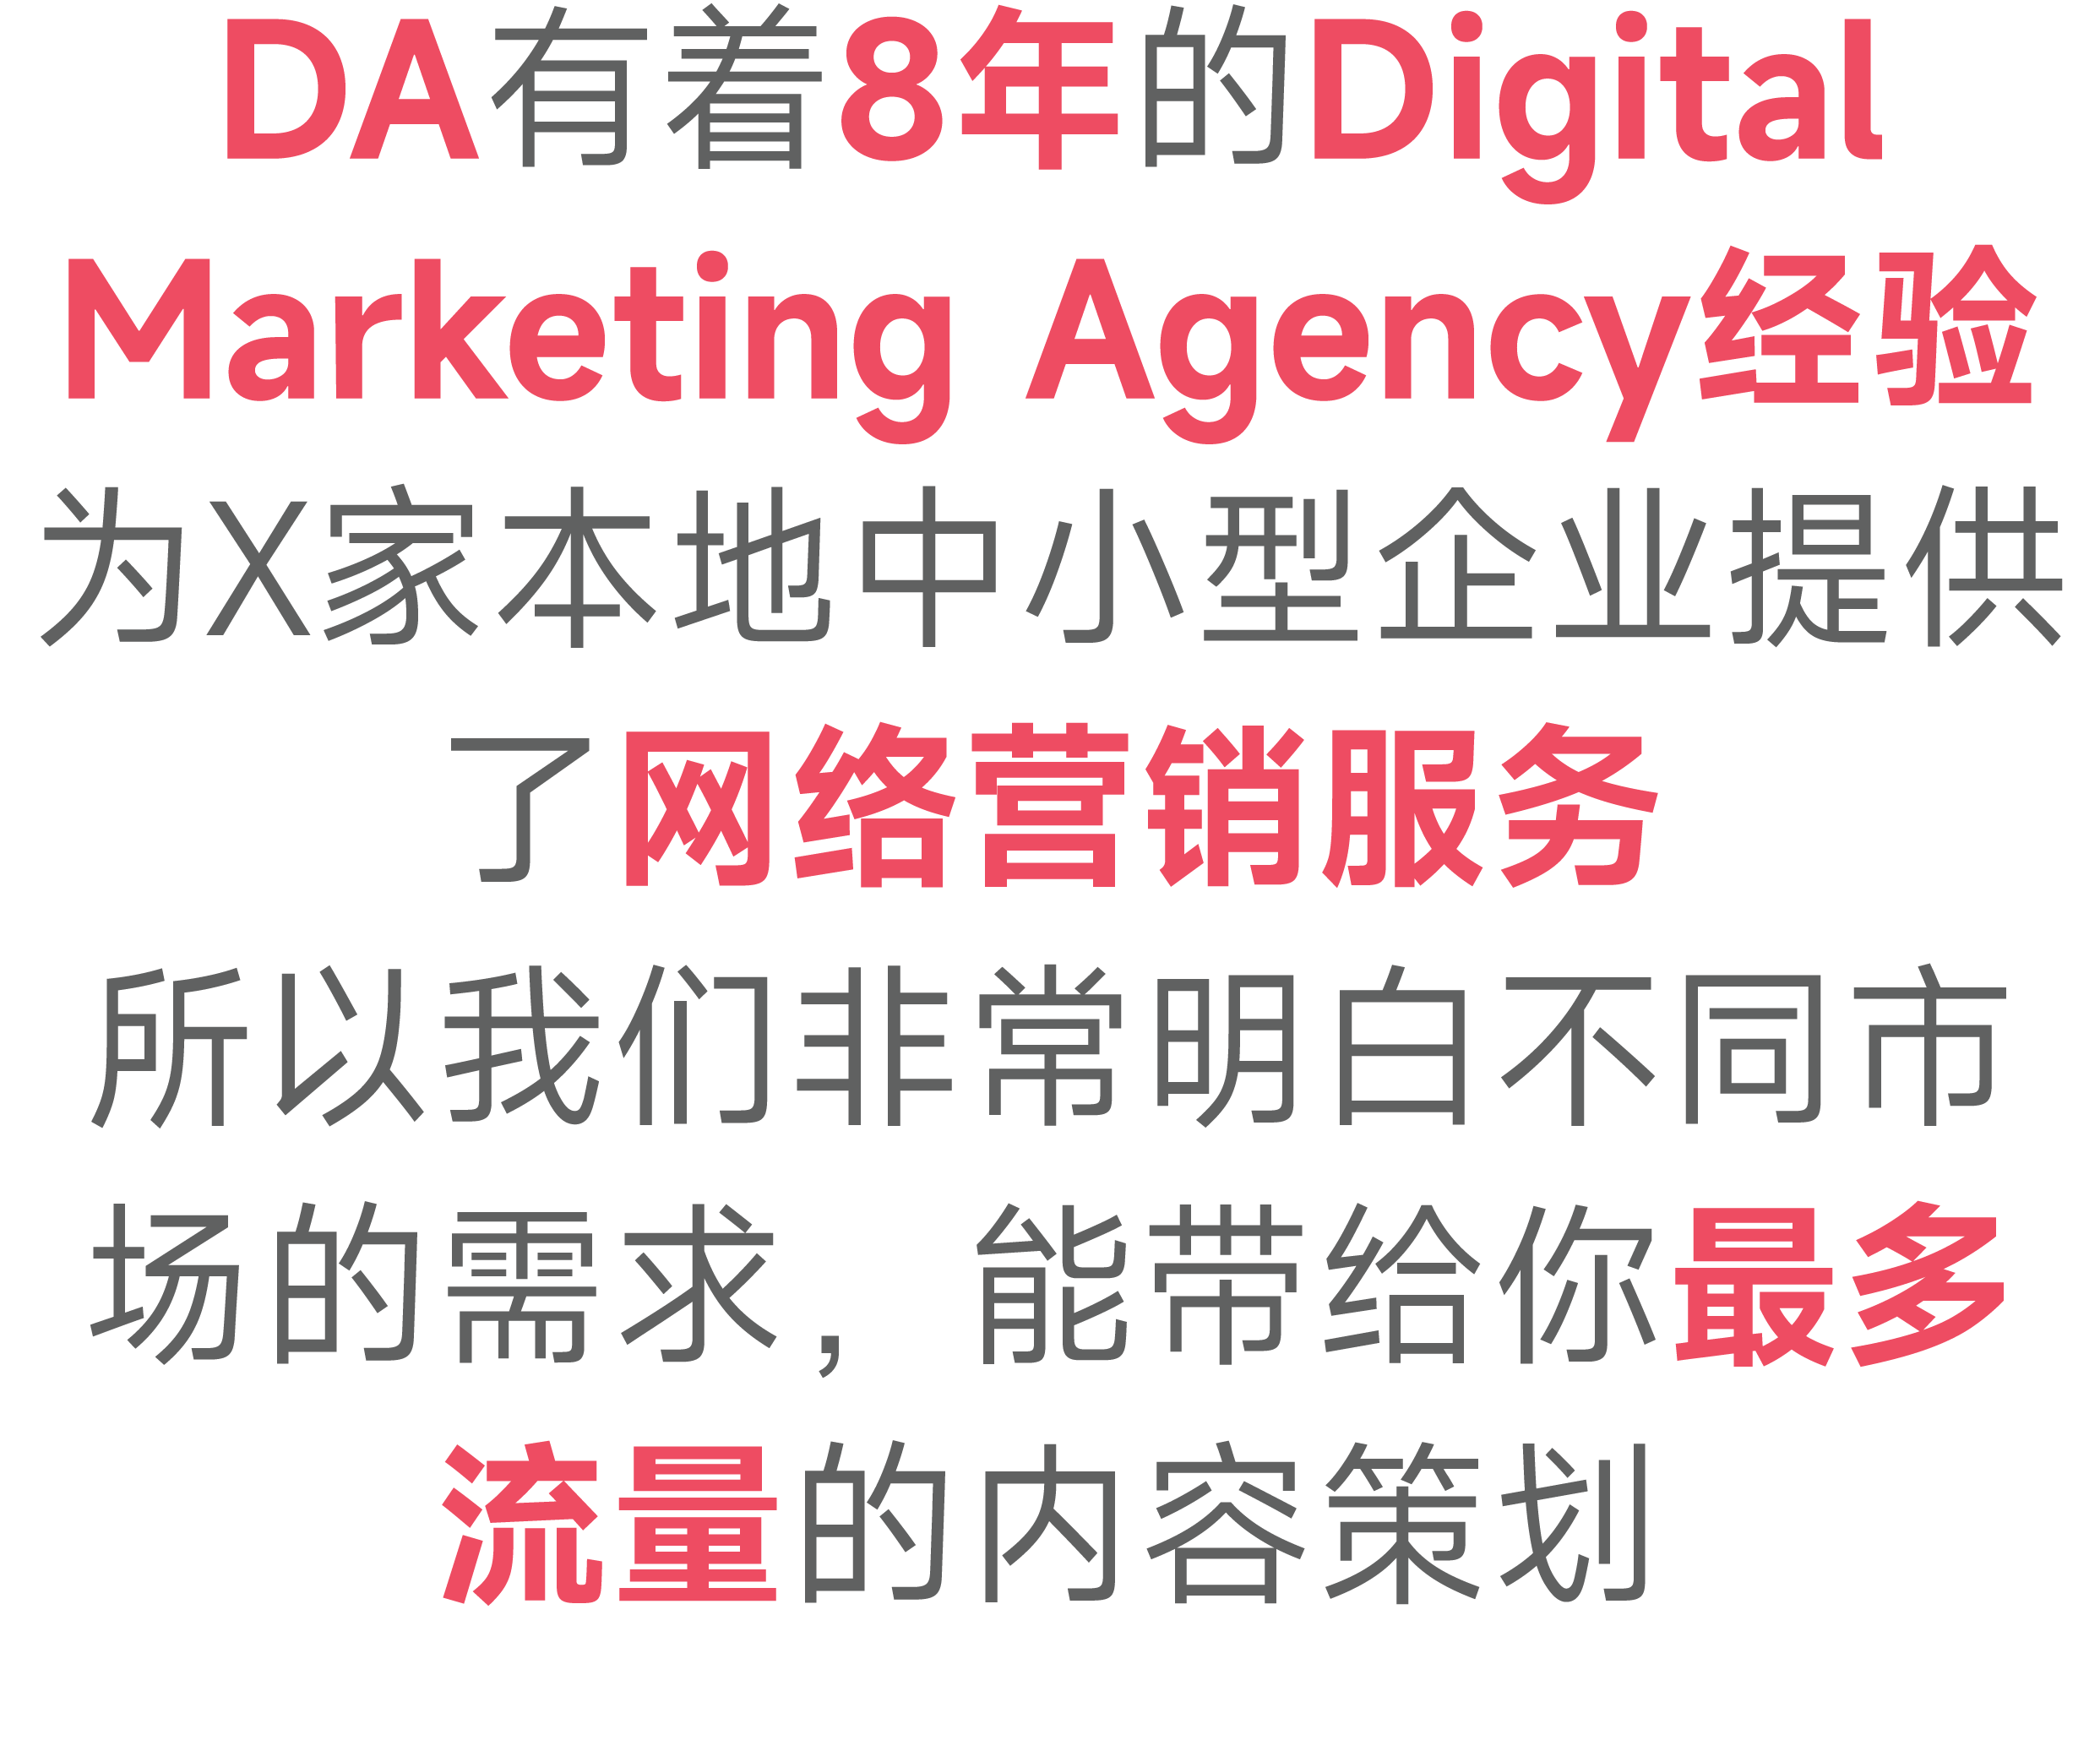 DA有着8年的Digital Marketing Agency经验 为X家本地中小型企业提供了网络营销服务 所以我们非常明白不同市场的需求，能带给你最多流量的内容策划